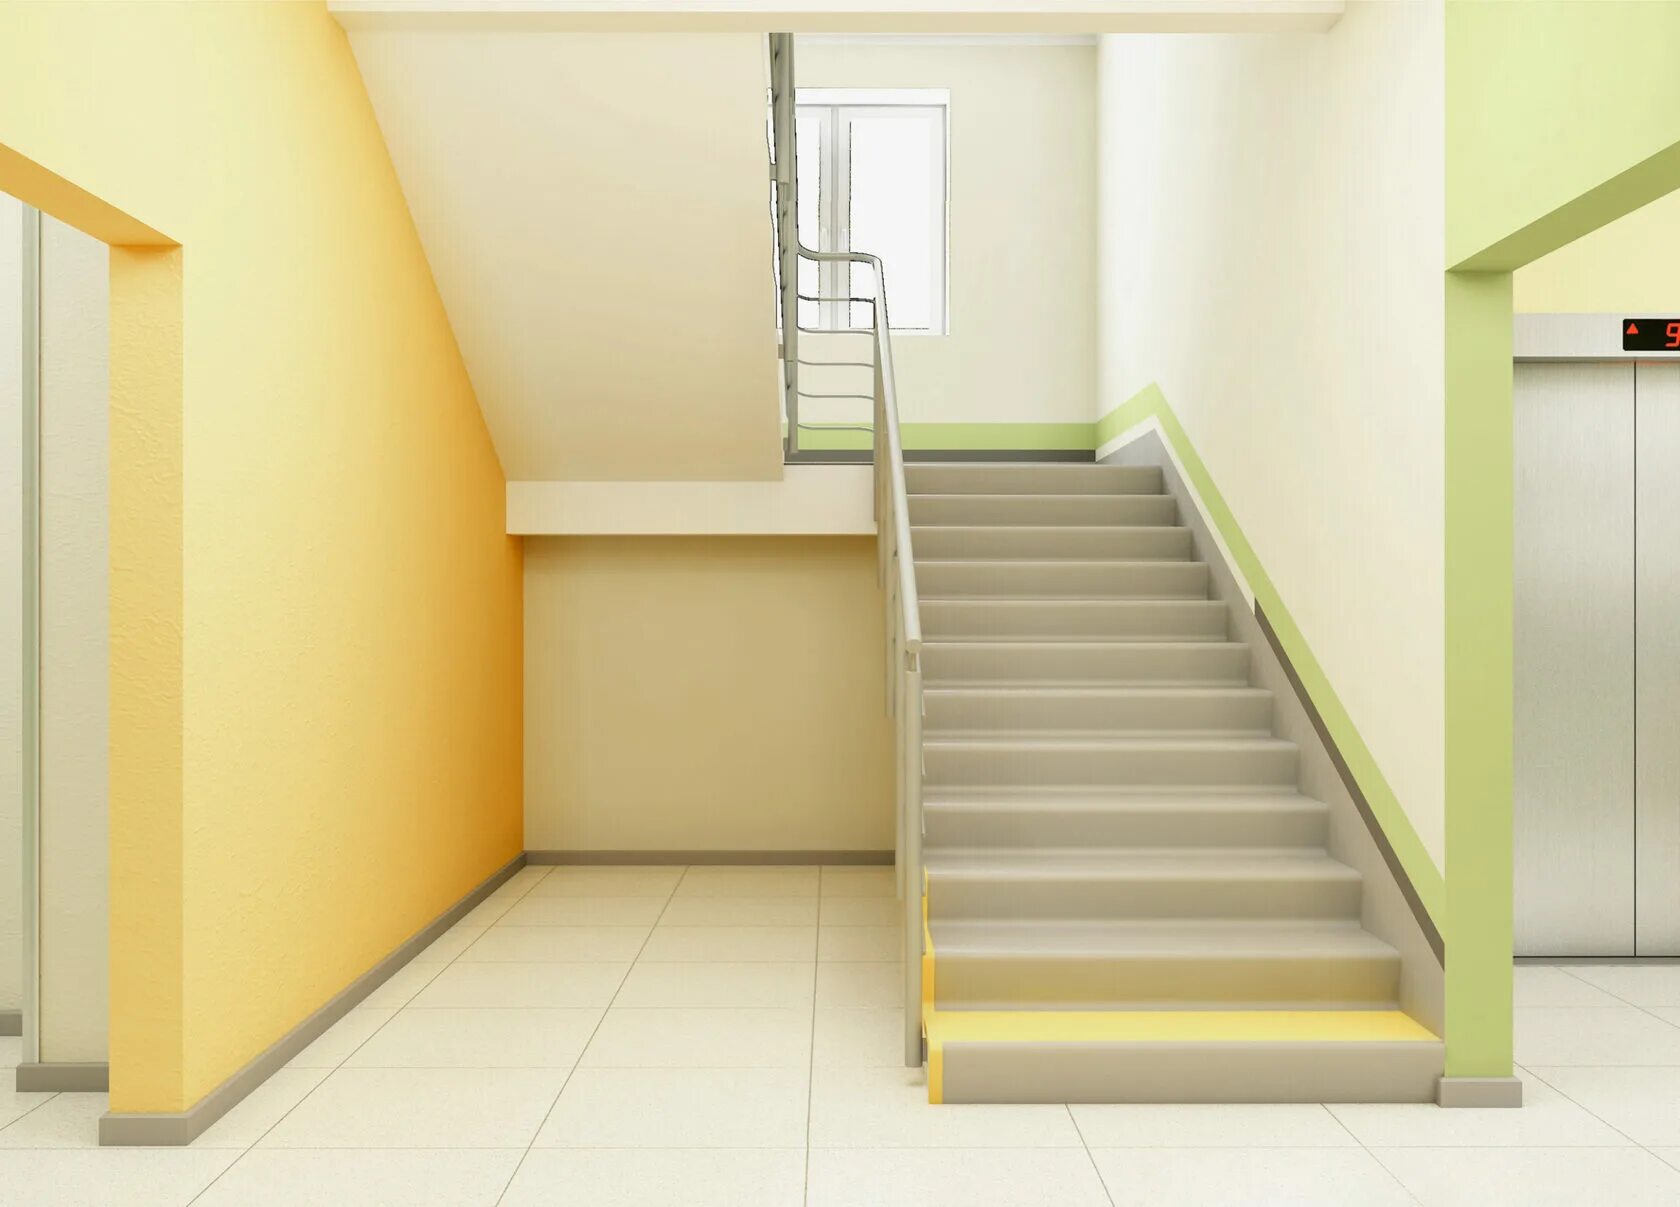 Лестница в подъезде. Красивый подъезд. Желтый подъезд. Покраска подъезда. Какой подъезд и какая квартира